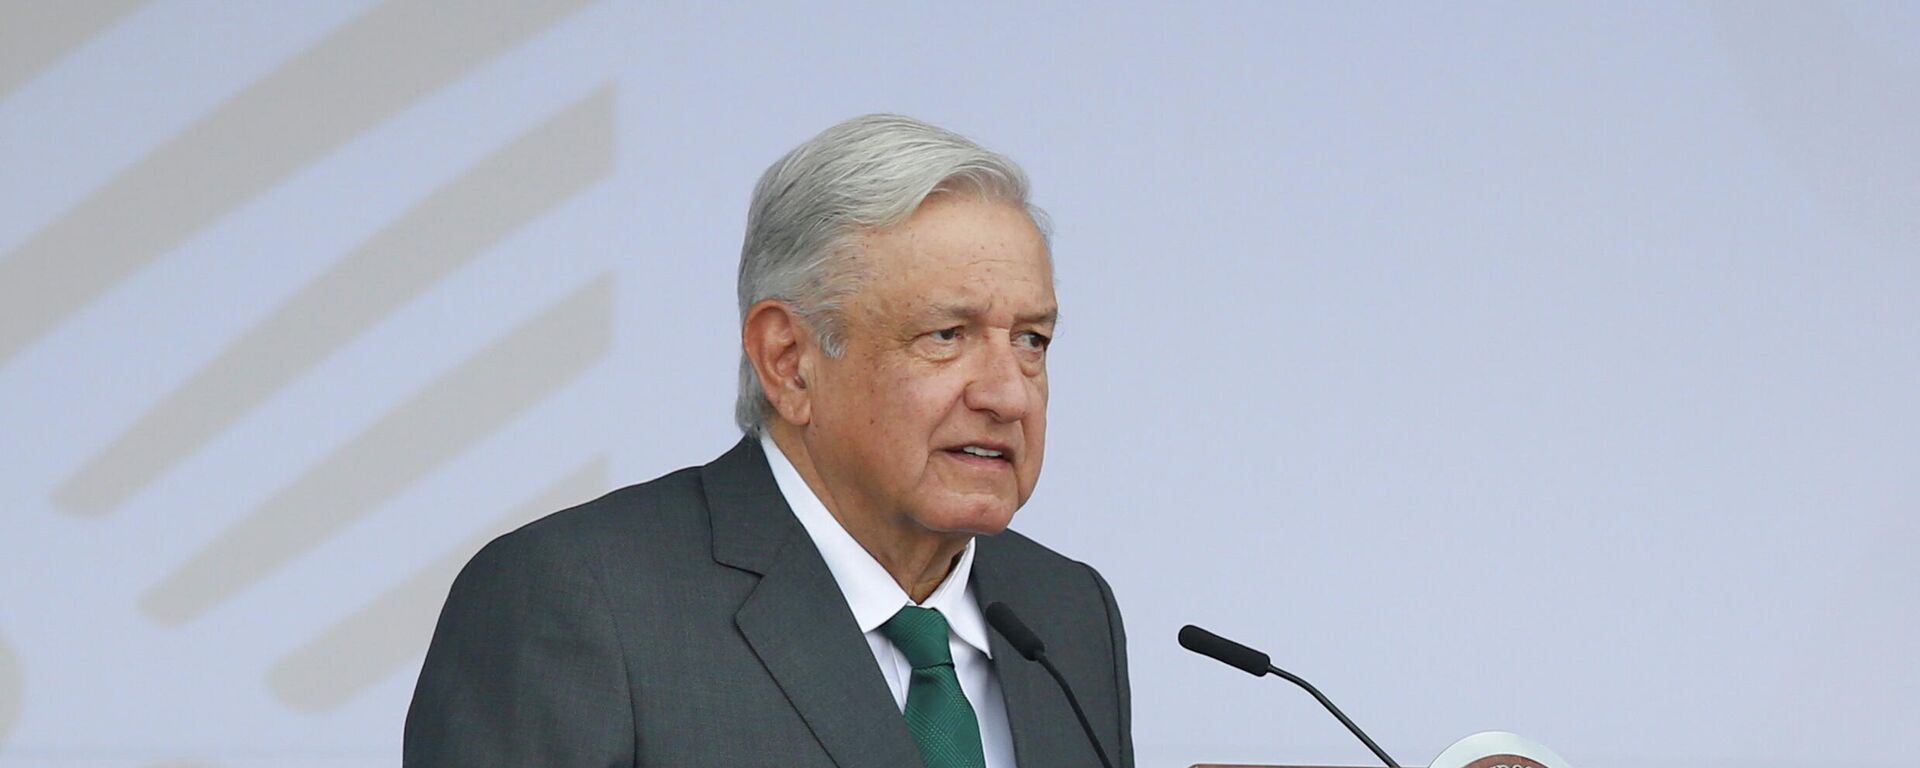 Andrés Manuel López Obrador, presidente de México - Sputnik Mundo, 1920, 18.09.2021